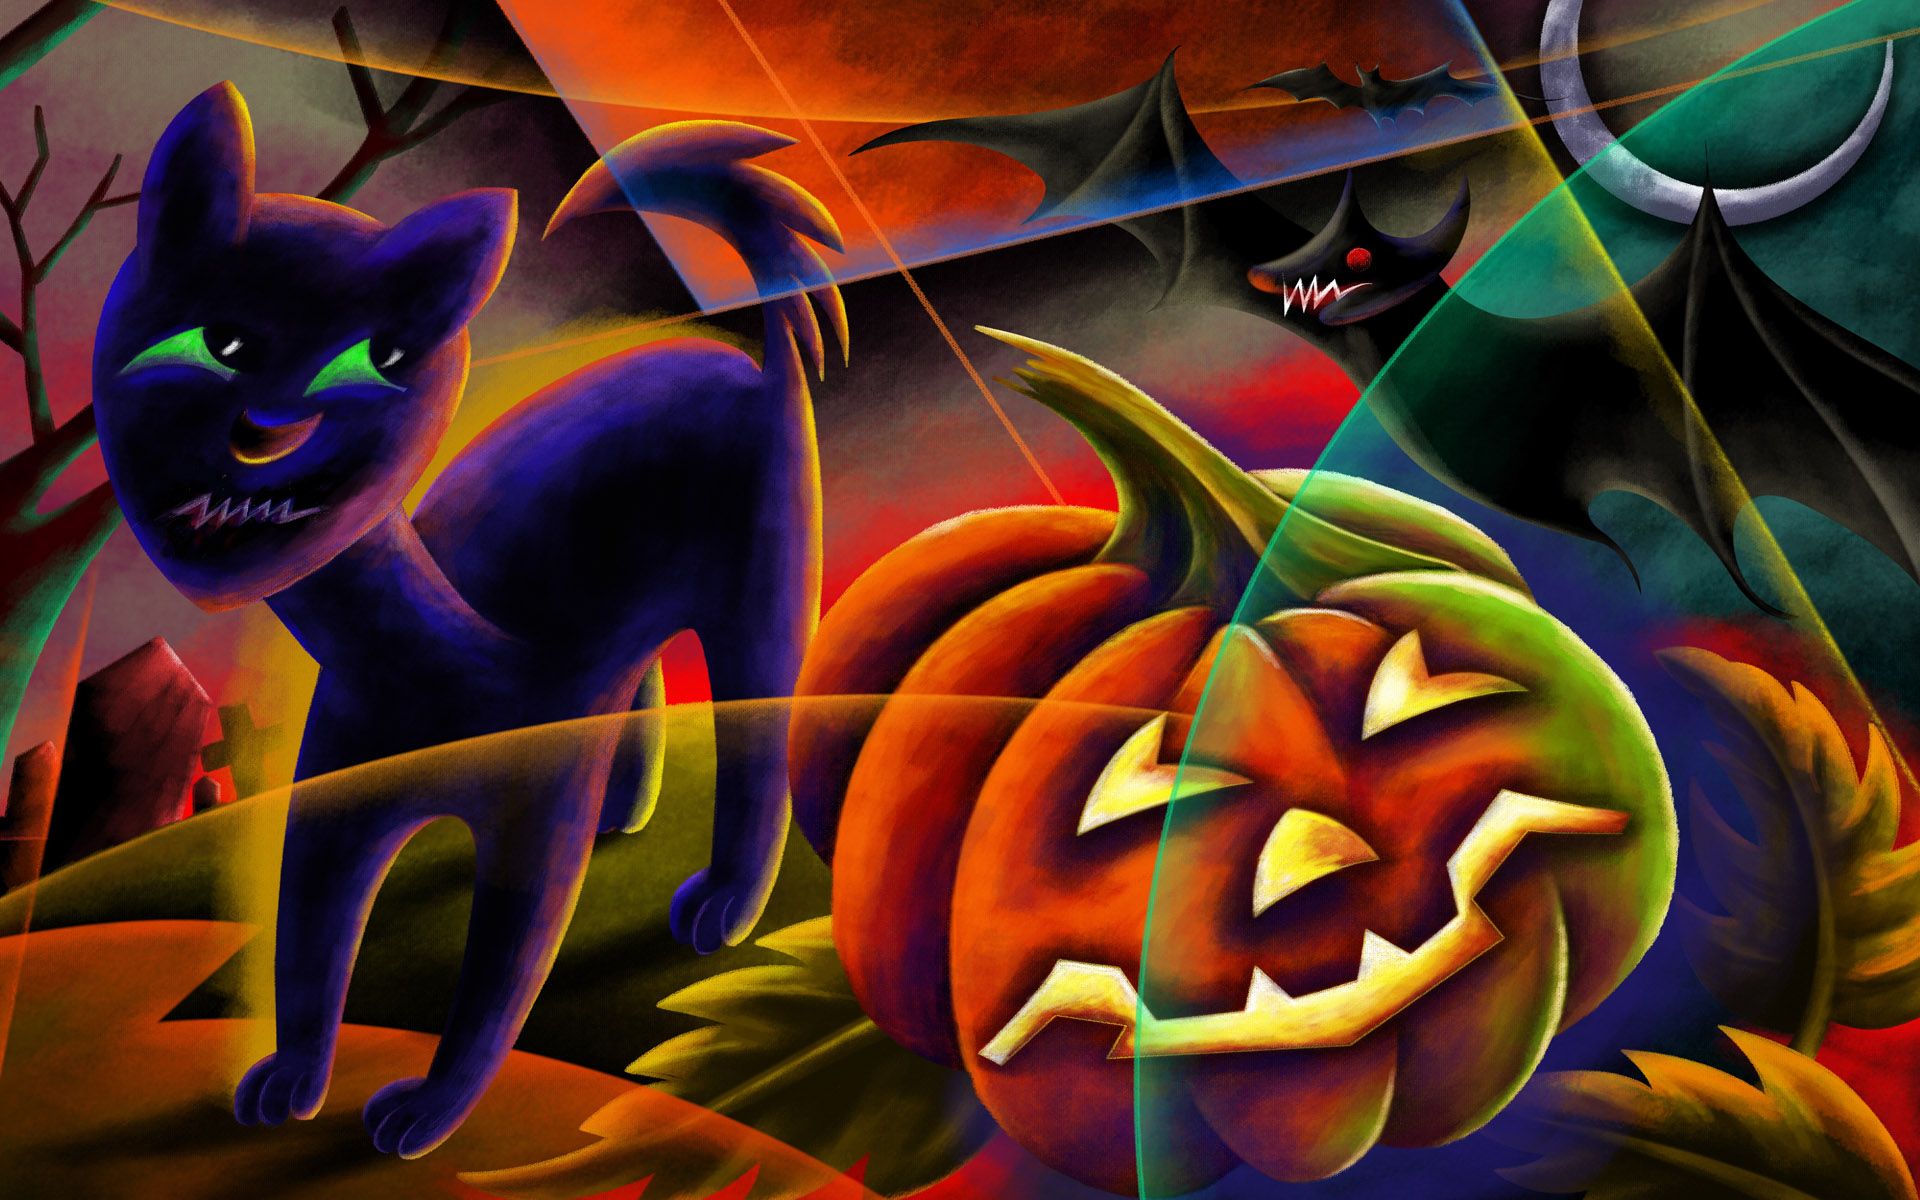 Free Download Neon Halloween Background for Desktop